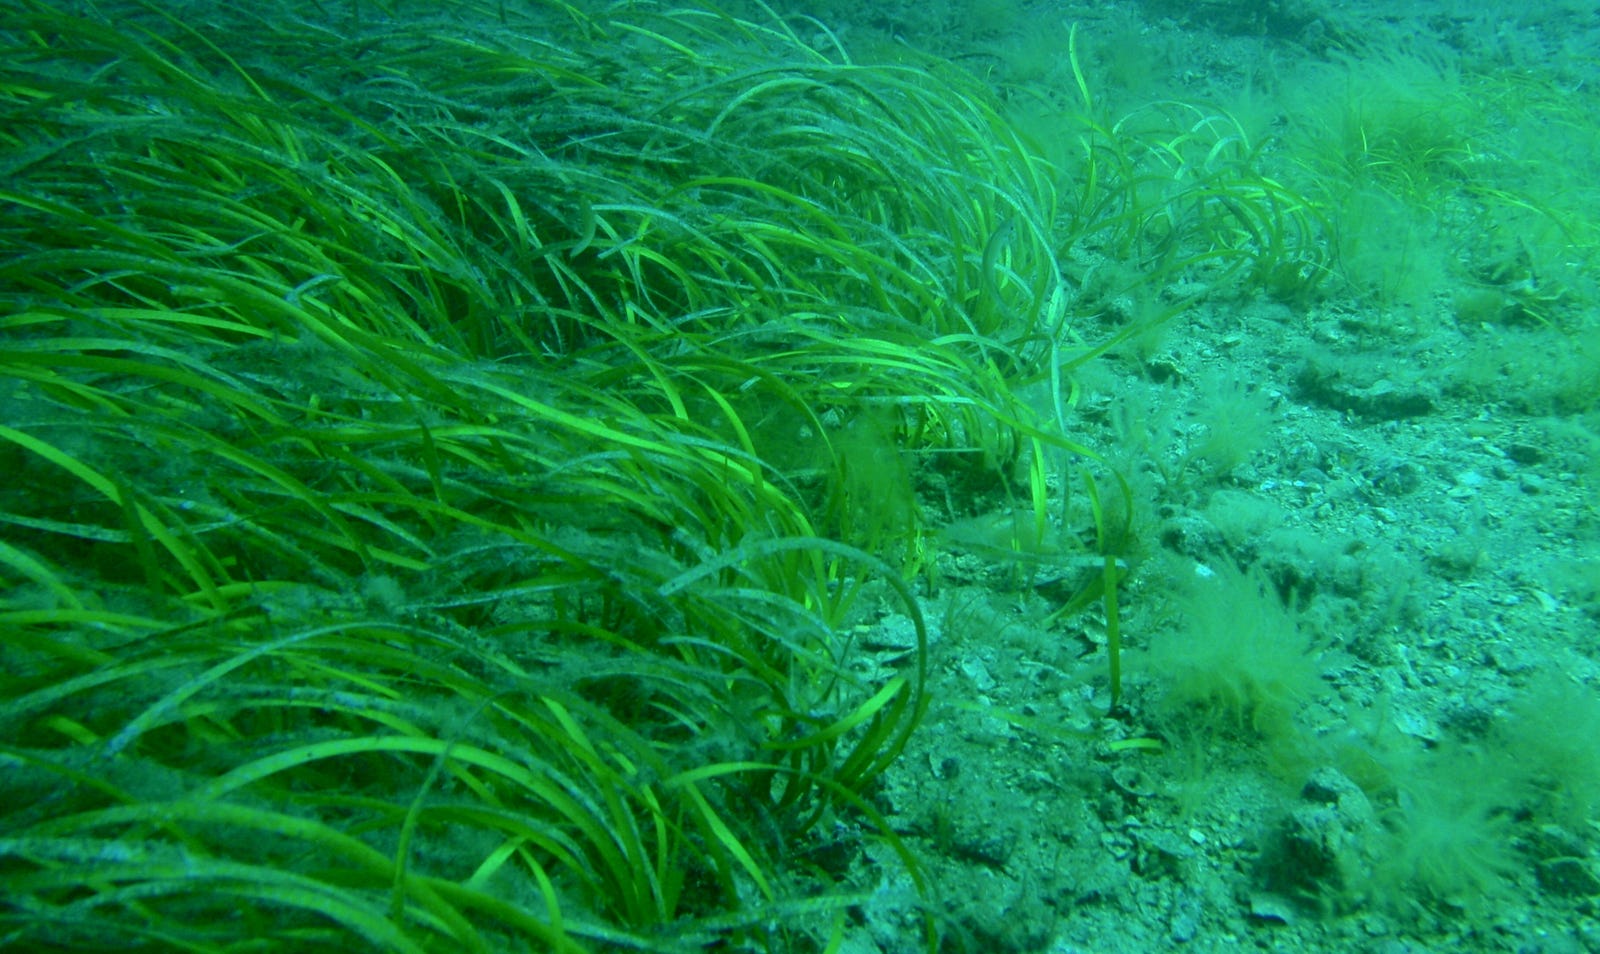 Seagrass loss